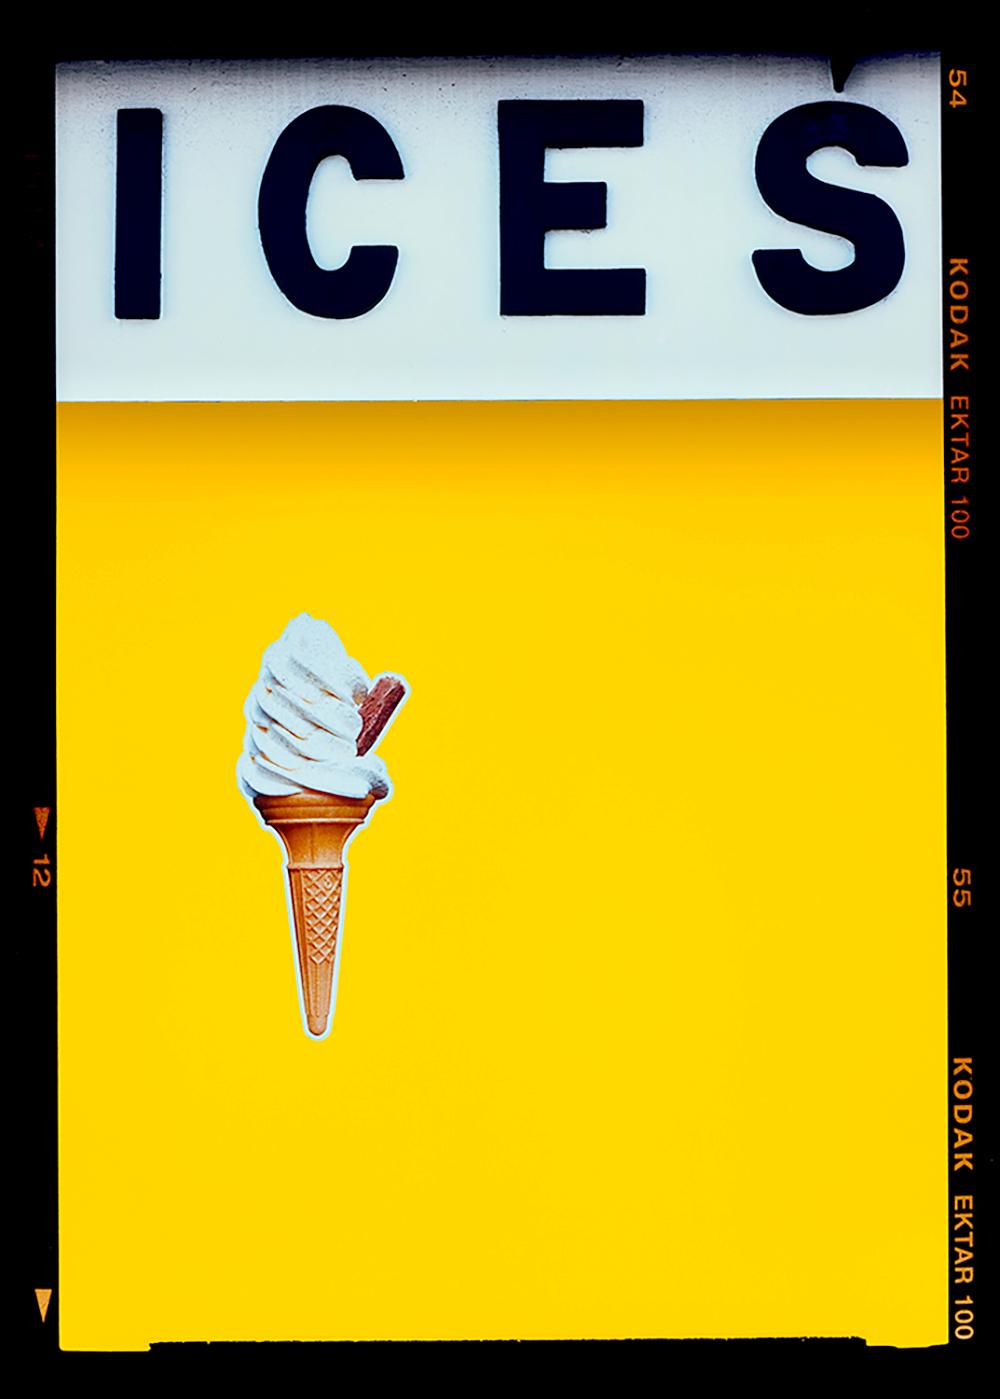 Richard Heeps Color Photograph – Ices (Gelb), Bexhill-on-Sea - Farbfotografie an der britischen Küste